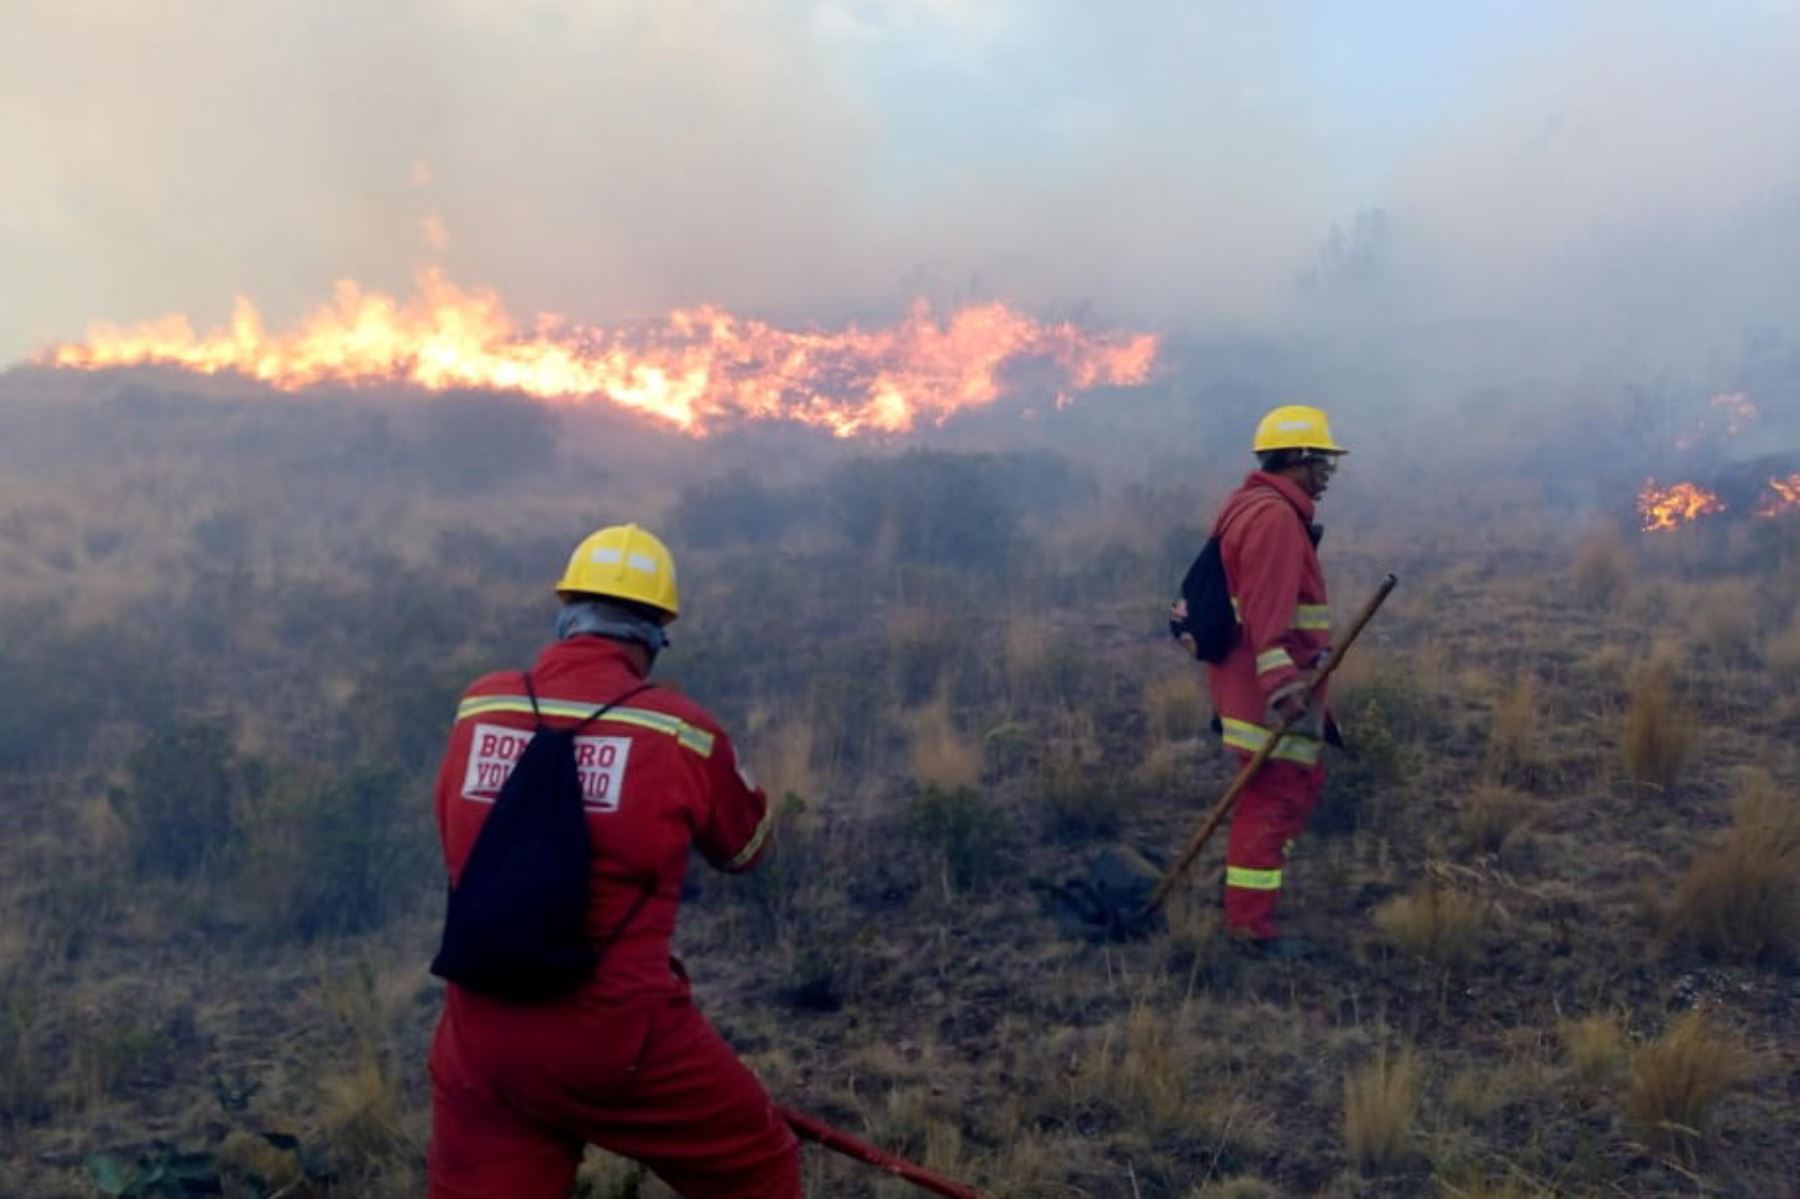 Luego de casi nueve horas de arduo combate contra el fuego, fue extinguido el incendio forestal ocurrido en el sector de Pumamarca, del distrito de San Sebastián, en la región Cusco, informó el Instituto Nacional de Defensa Civil (Indeci).